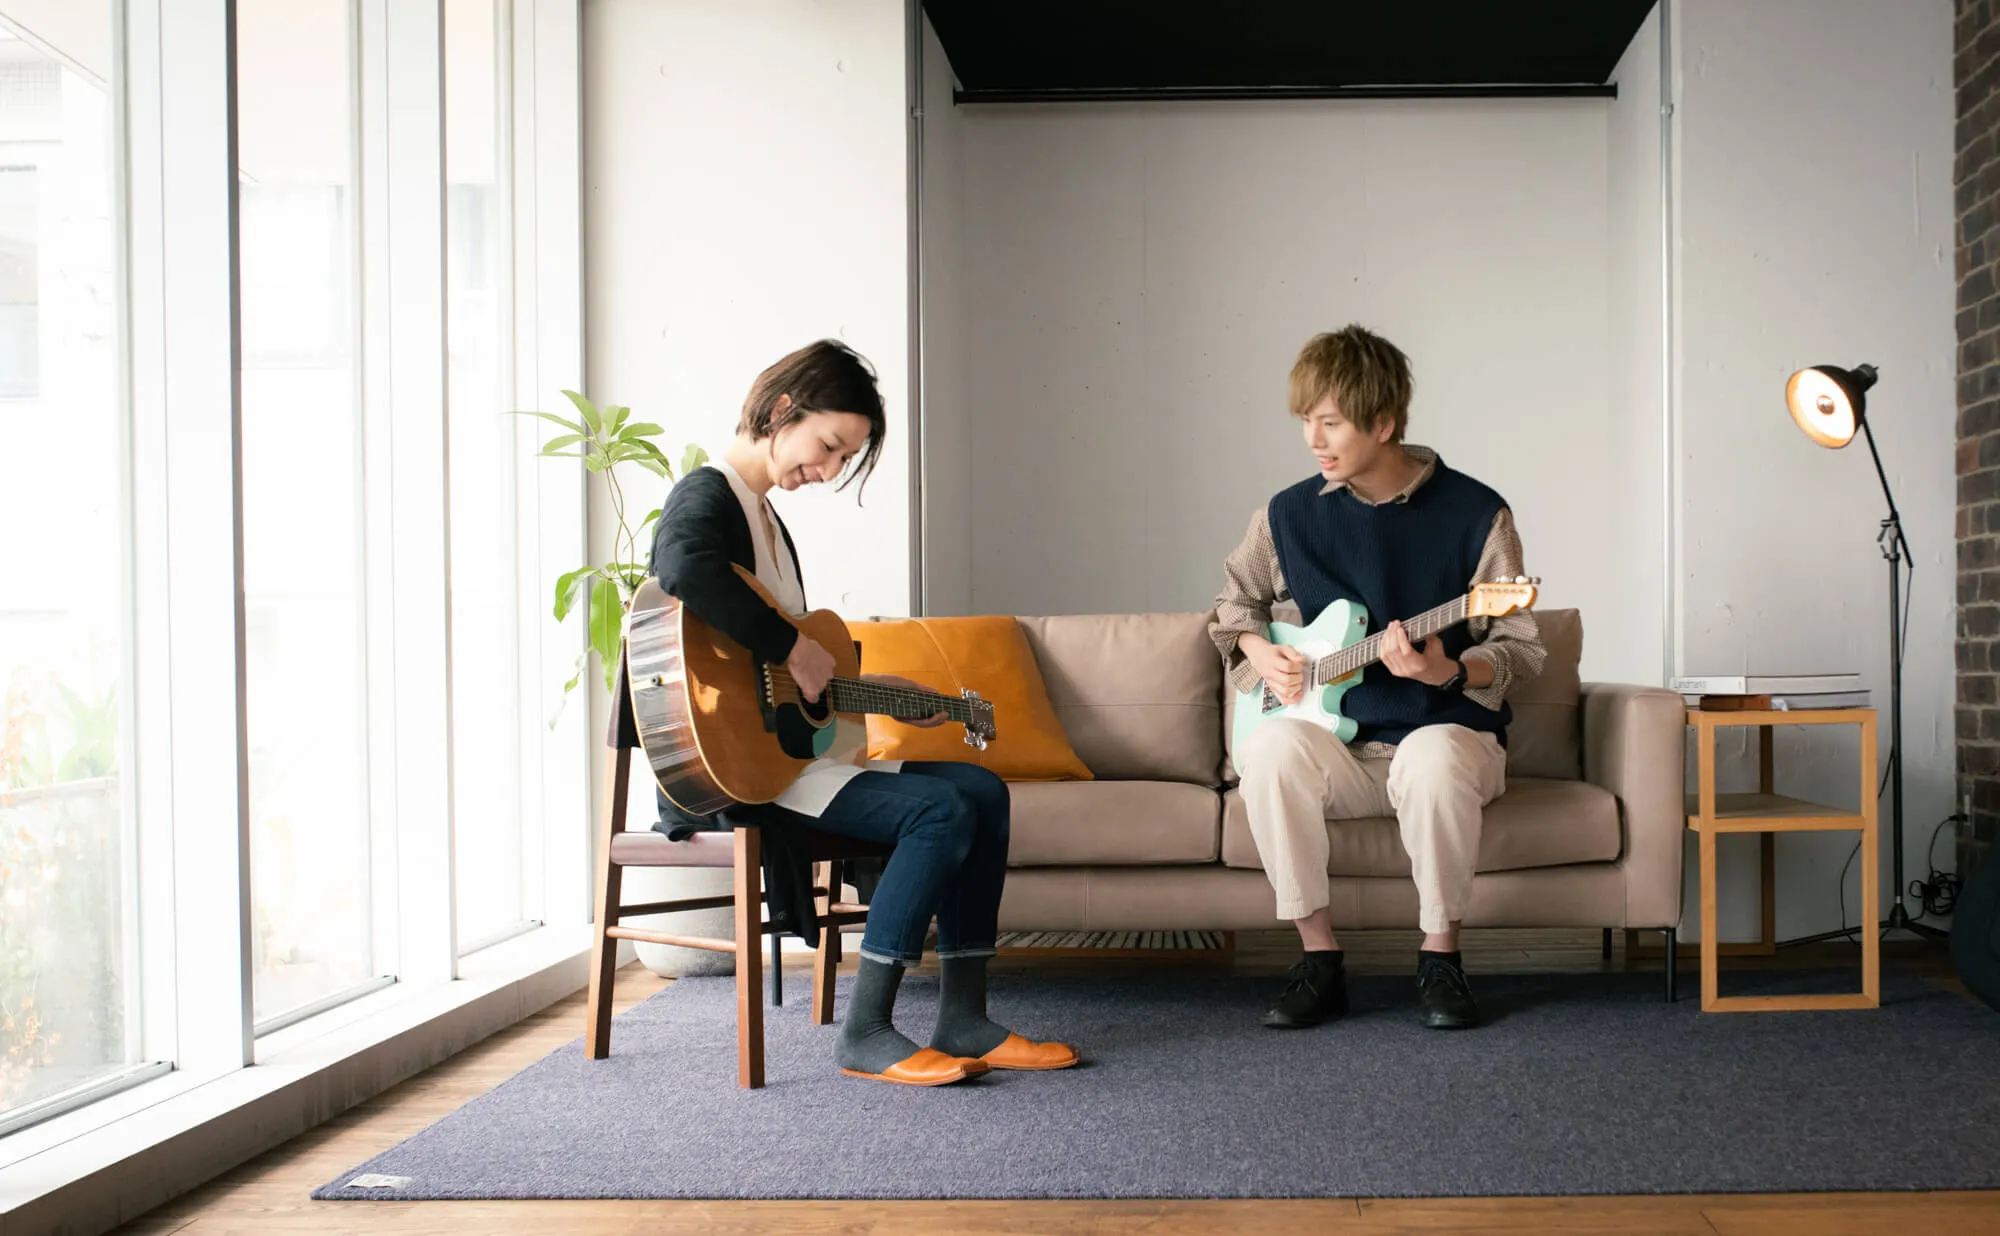 世田谷ギター教室 | 60分完全個人レッスンのエルギタースクール